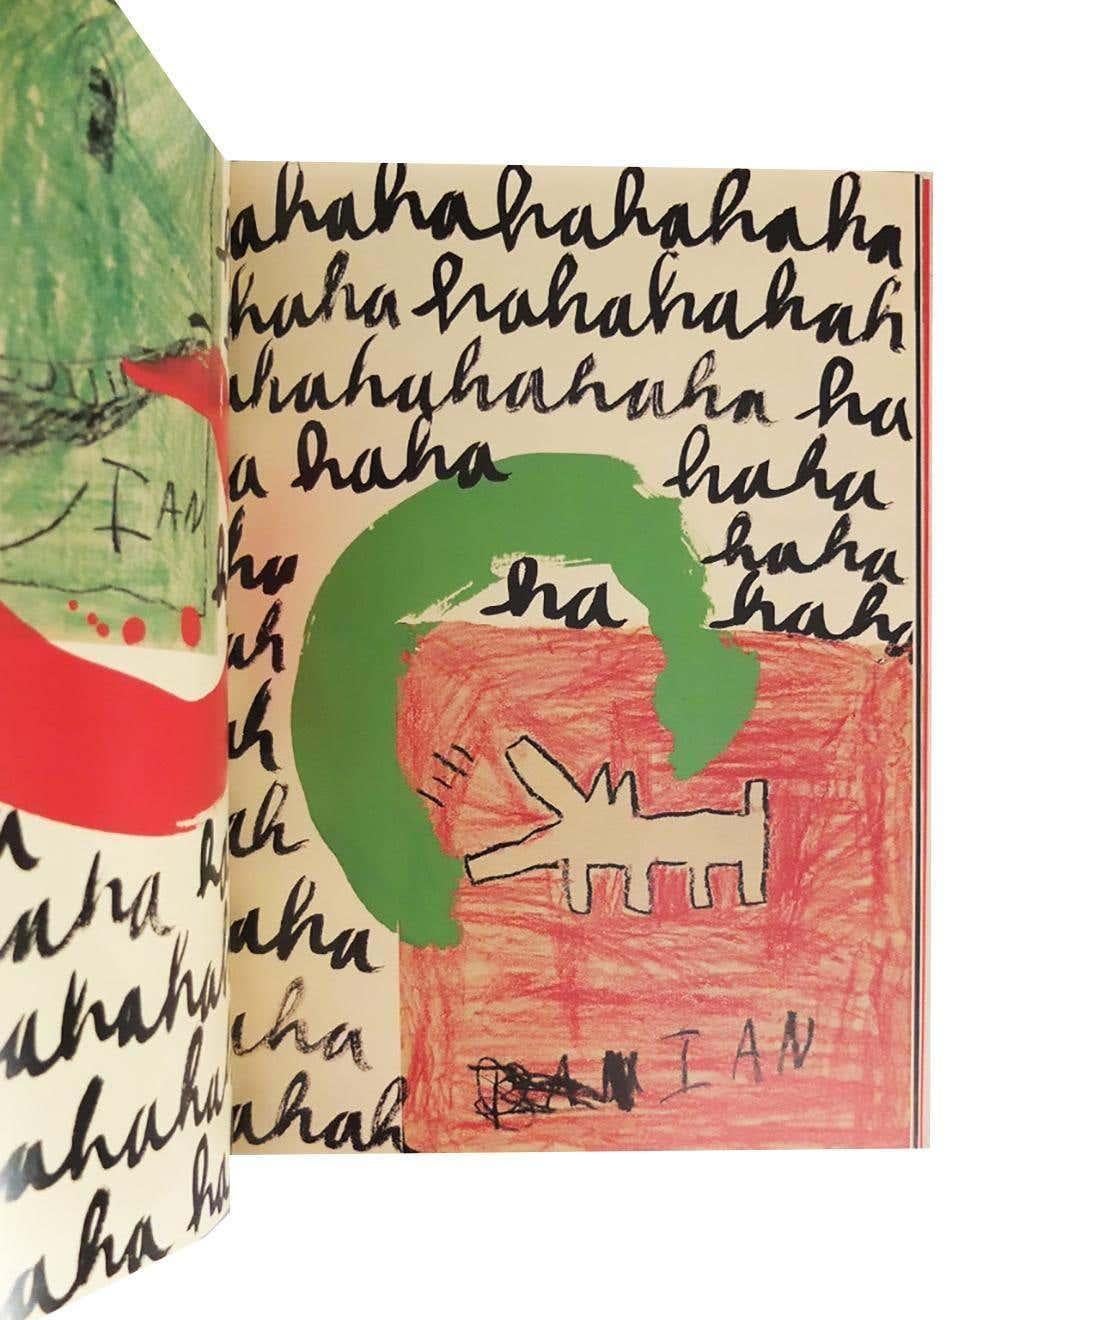 Eight Ball von Keith Haring:
Hervorragend gestaltete Monografie von Keith Haring aus dem Jahr 1989 mit herausragenden Collagenbildern des legendären New Yorker Künstlers. Schöne helle Farben überall. 

Hardcover Künstlerbuch; 46 Seiten; 1. Auflage